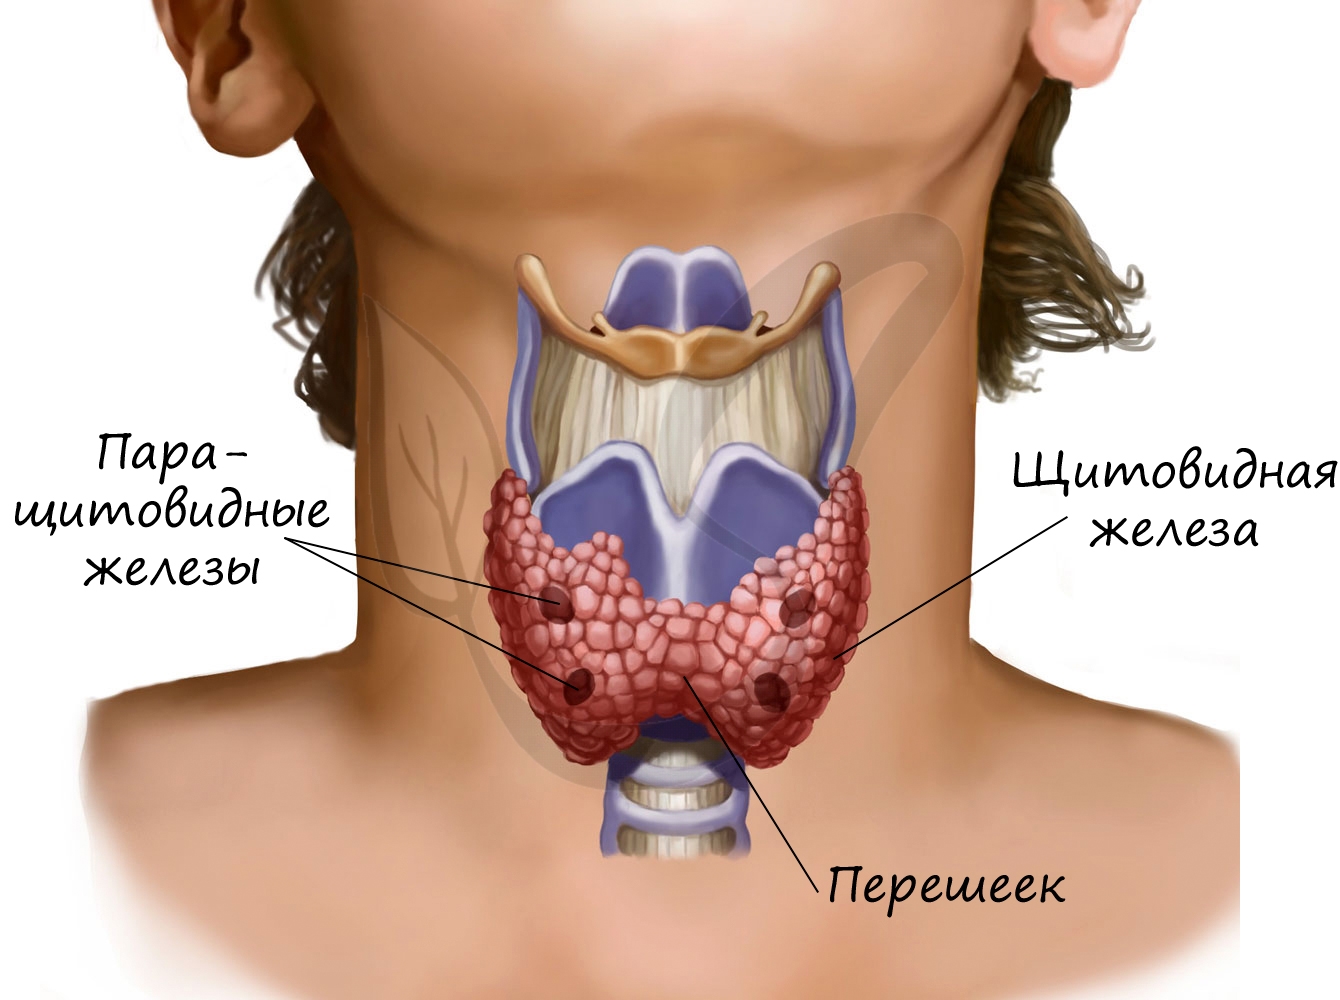 Зоб ахан. Узловой зоб щитовидной железы. Гемиагенезия щитовидной железы. Щитовидная железа перешеек щитовидной железы.